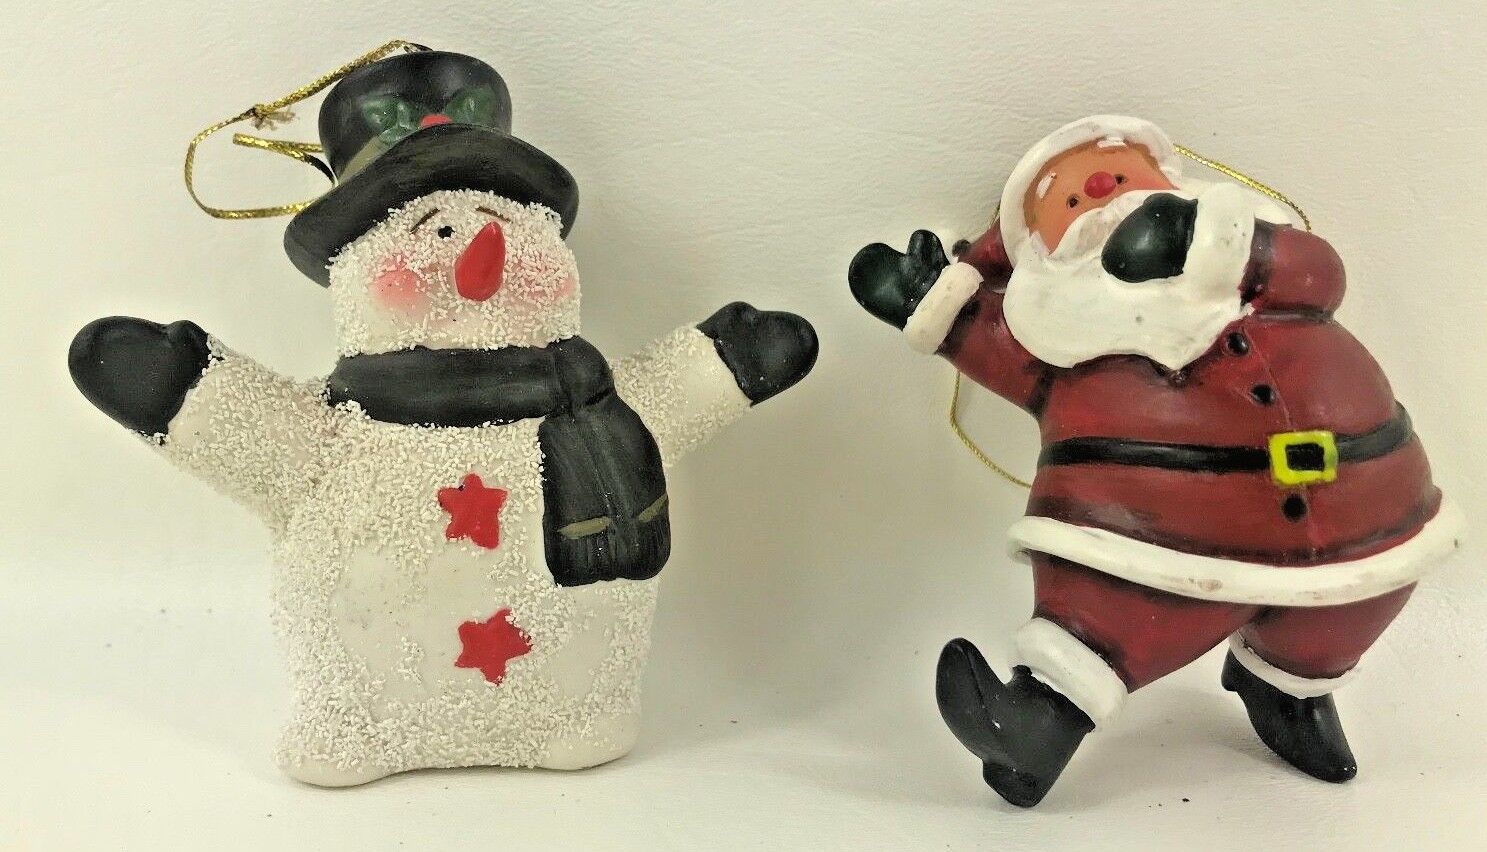 Pair of Holiday Christmas Resin Ornaments Snowman and Santa